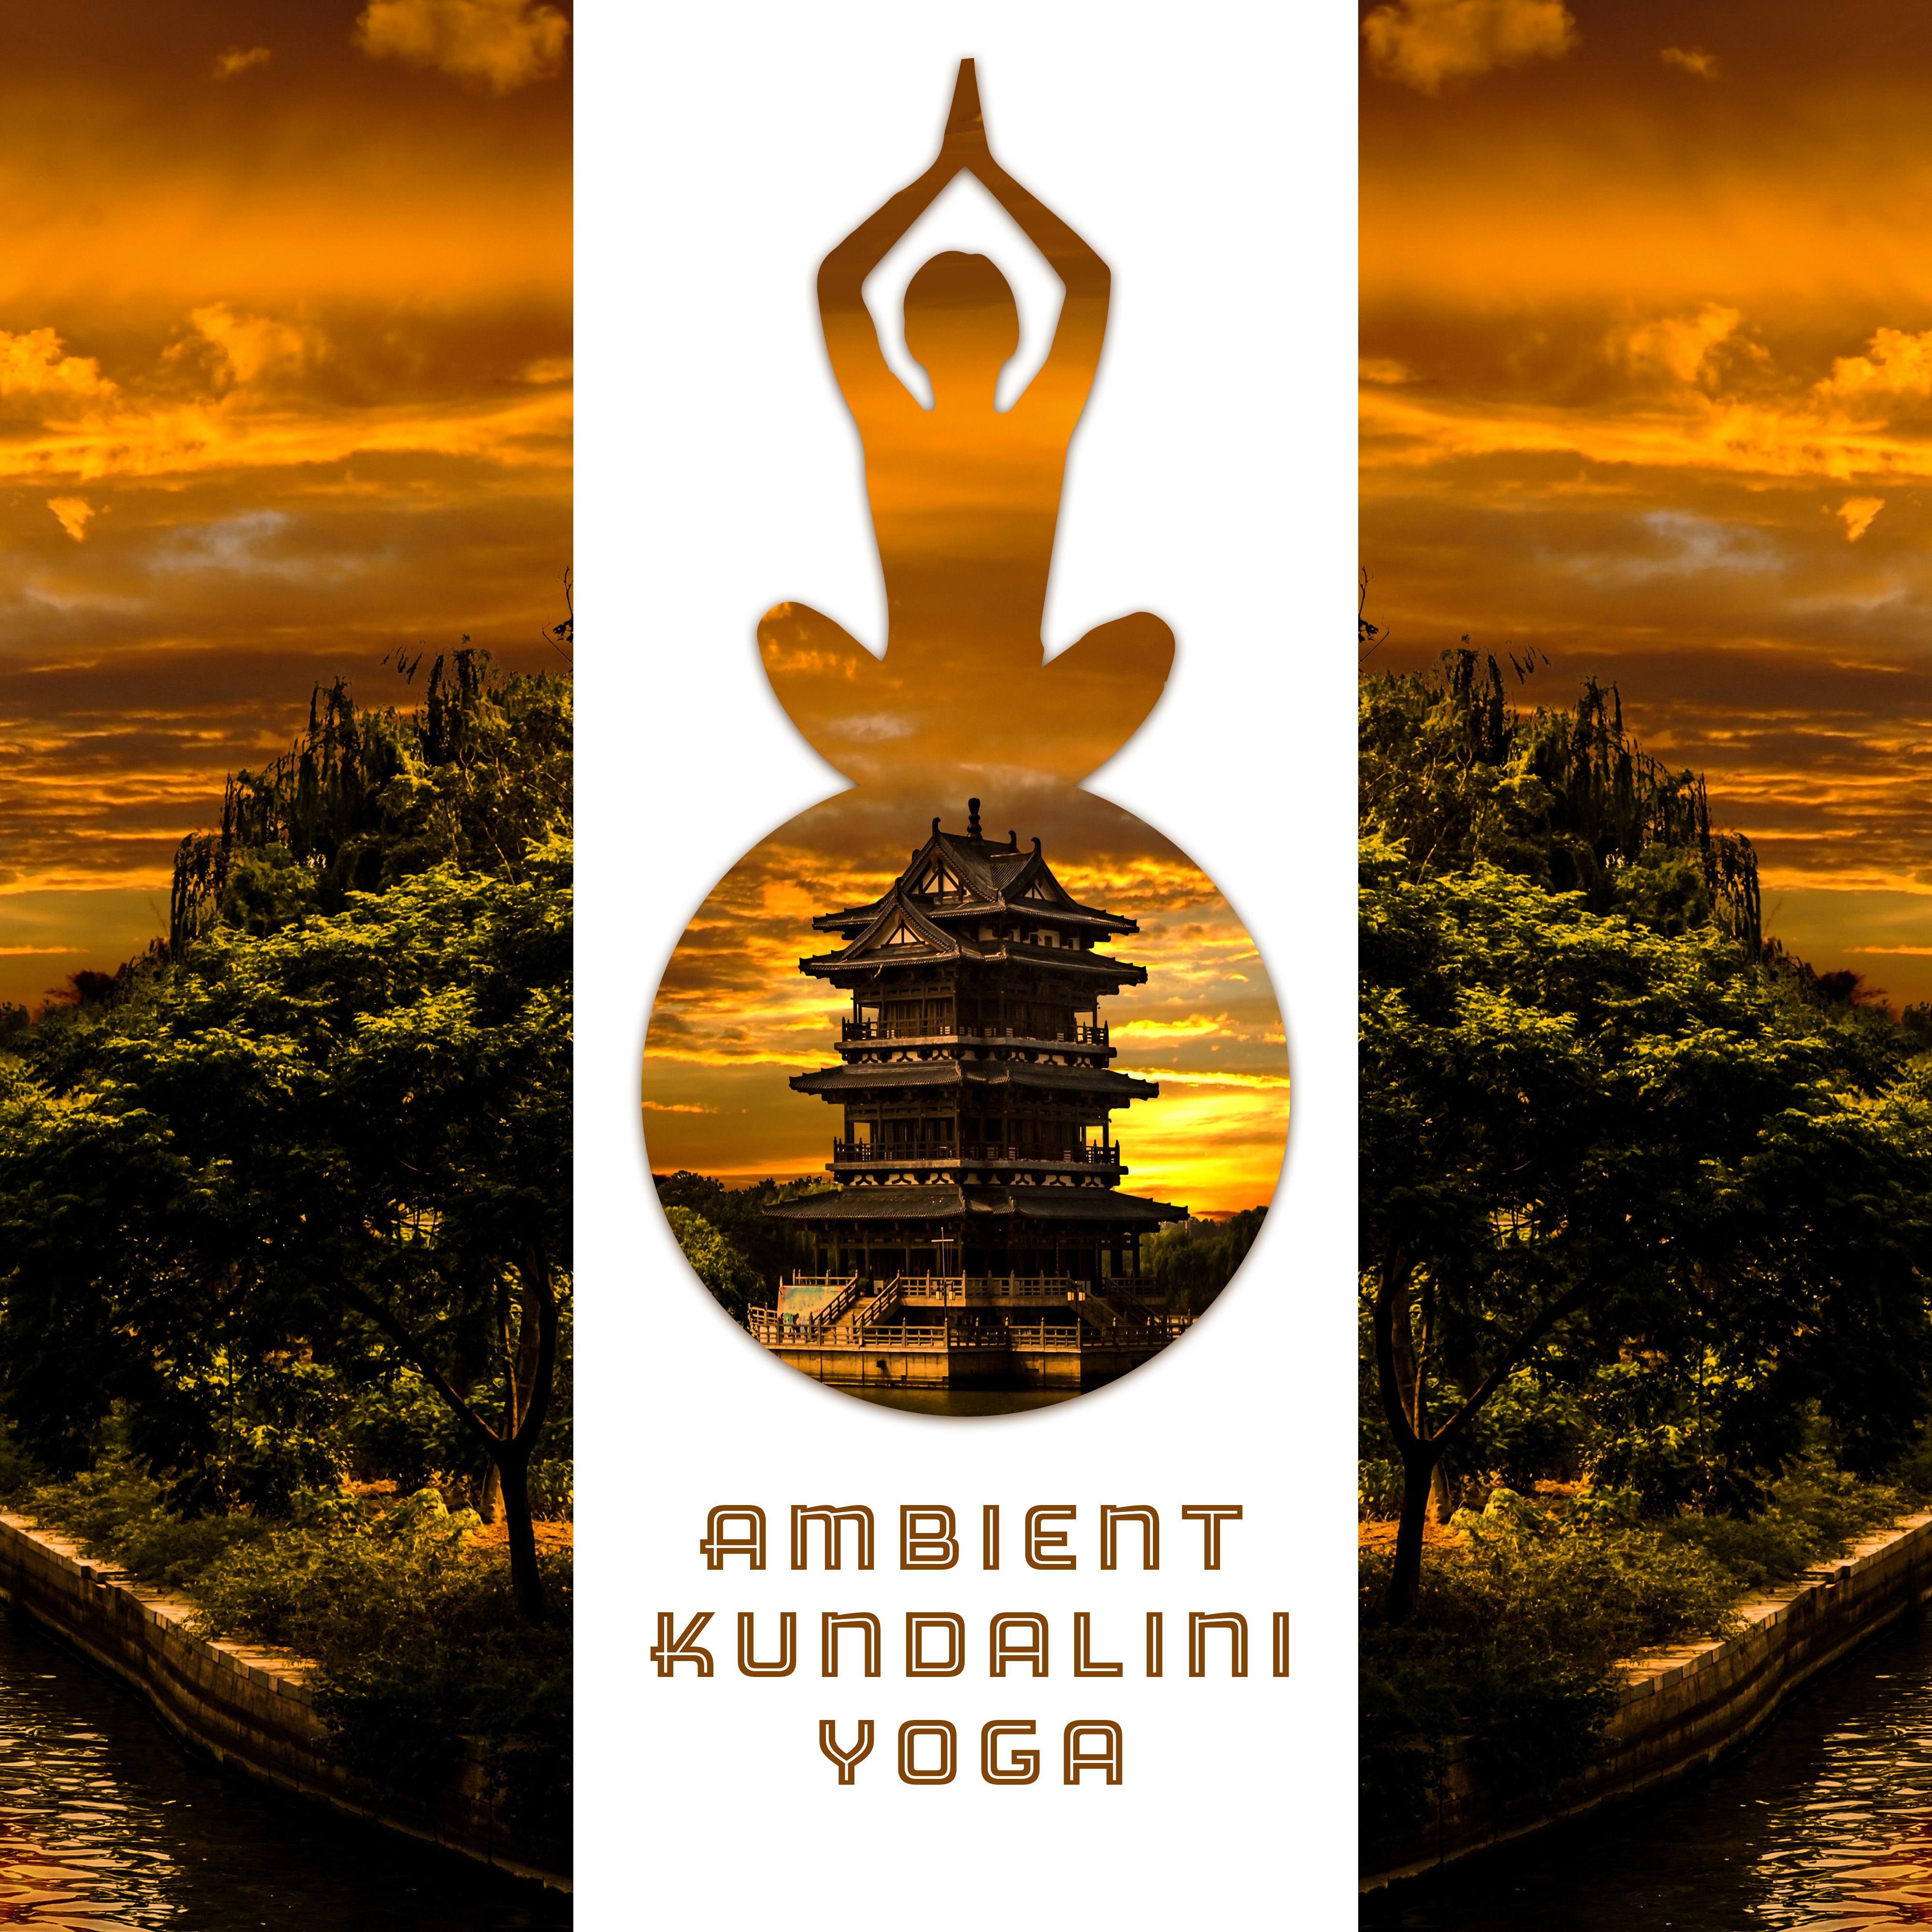 Ambient Kundalini Yoga